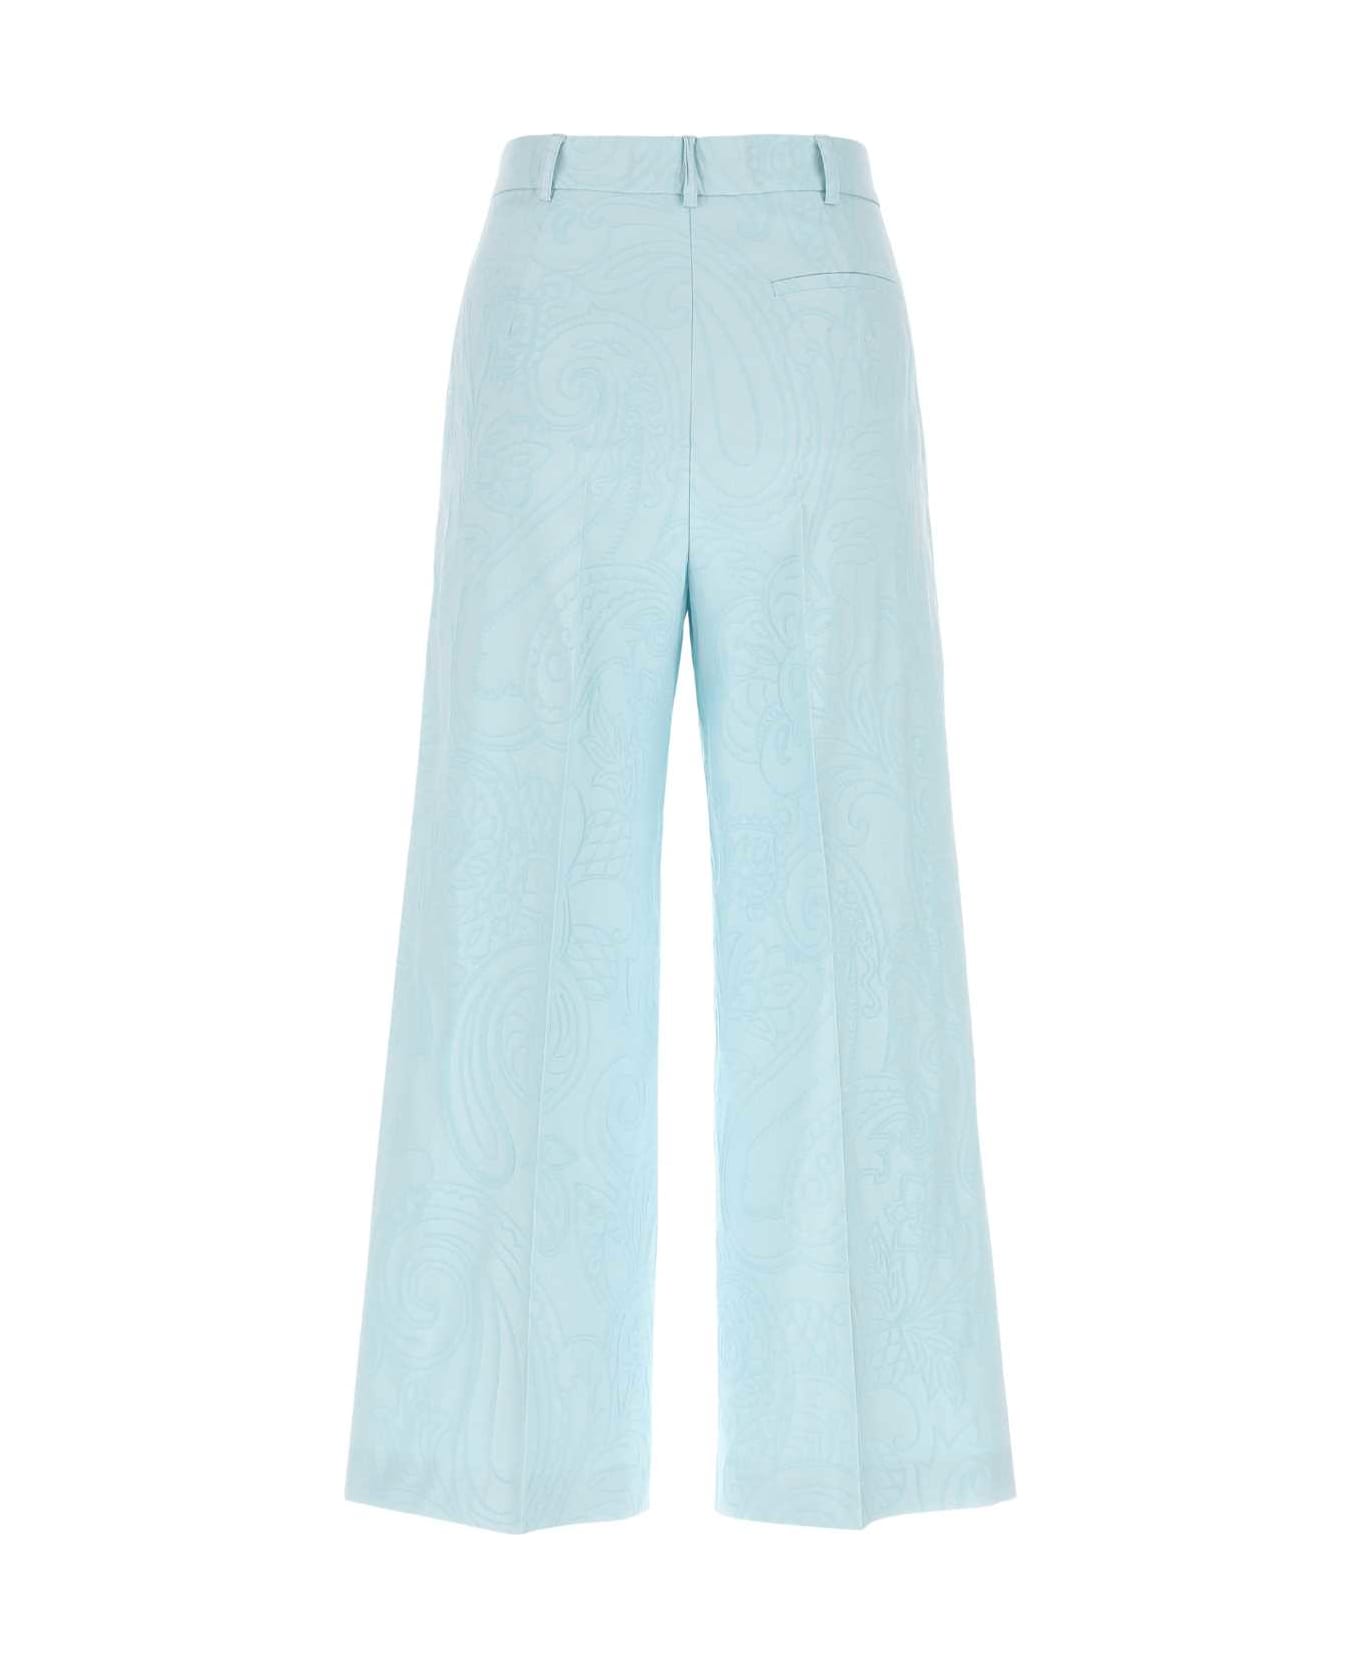 Etro Pastel Light-blue Stretch Cotton Blend Cropped-cut Pant - LIGHTBLUE